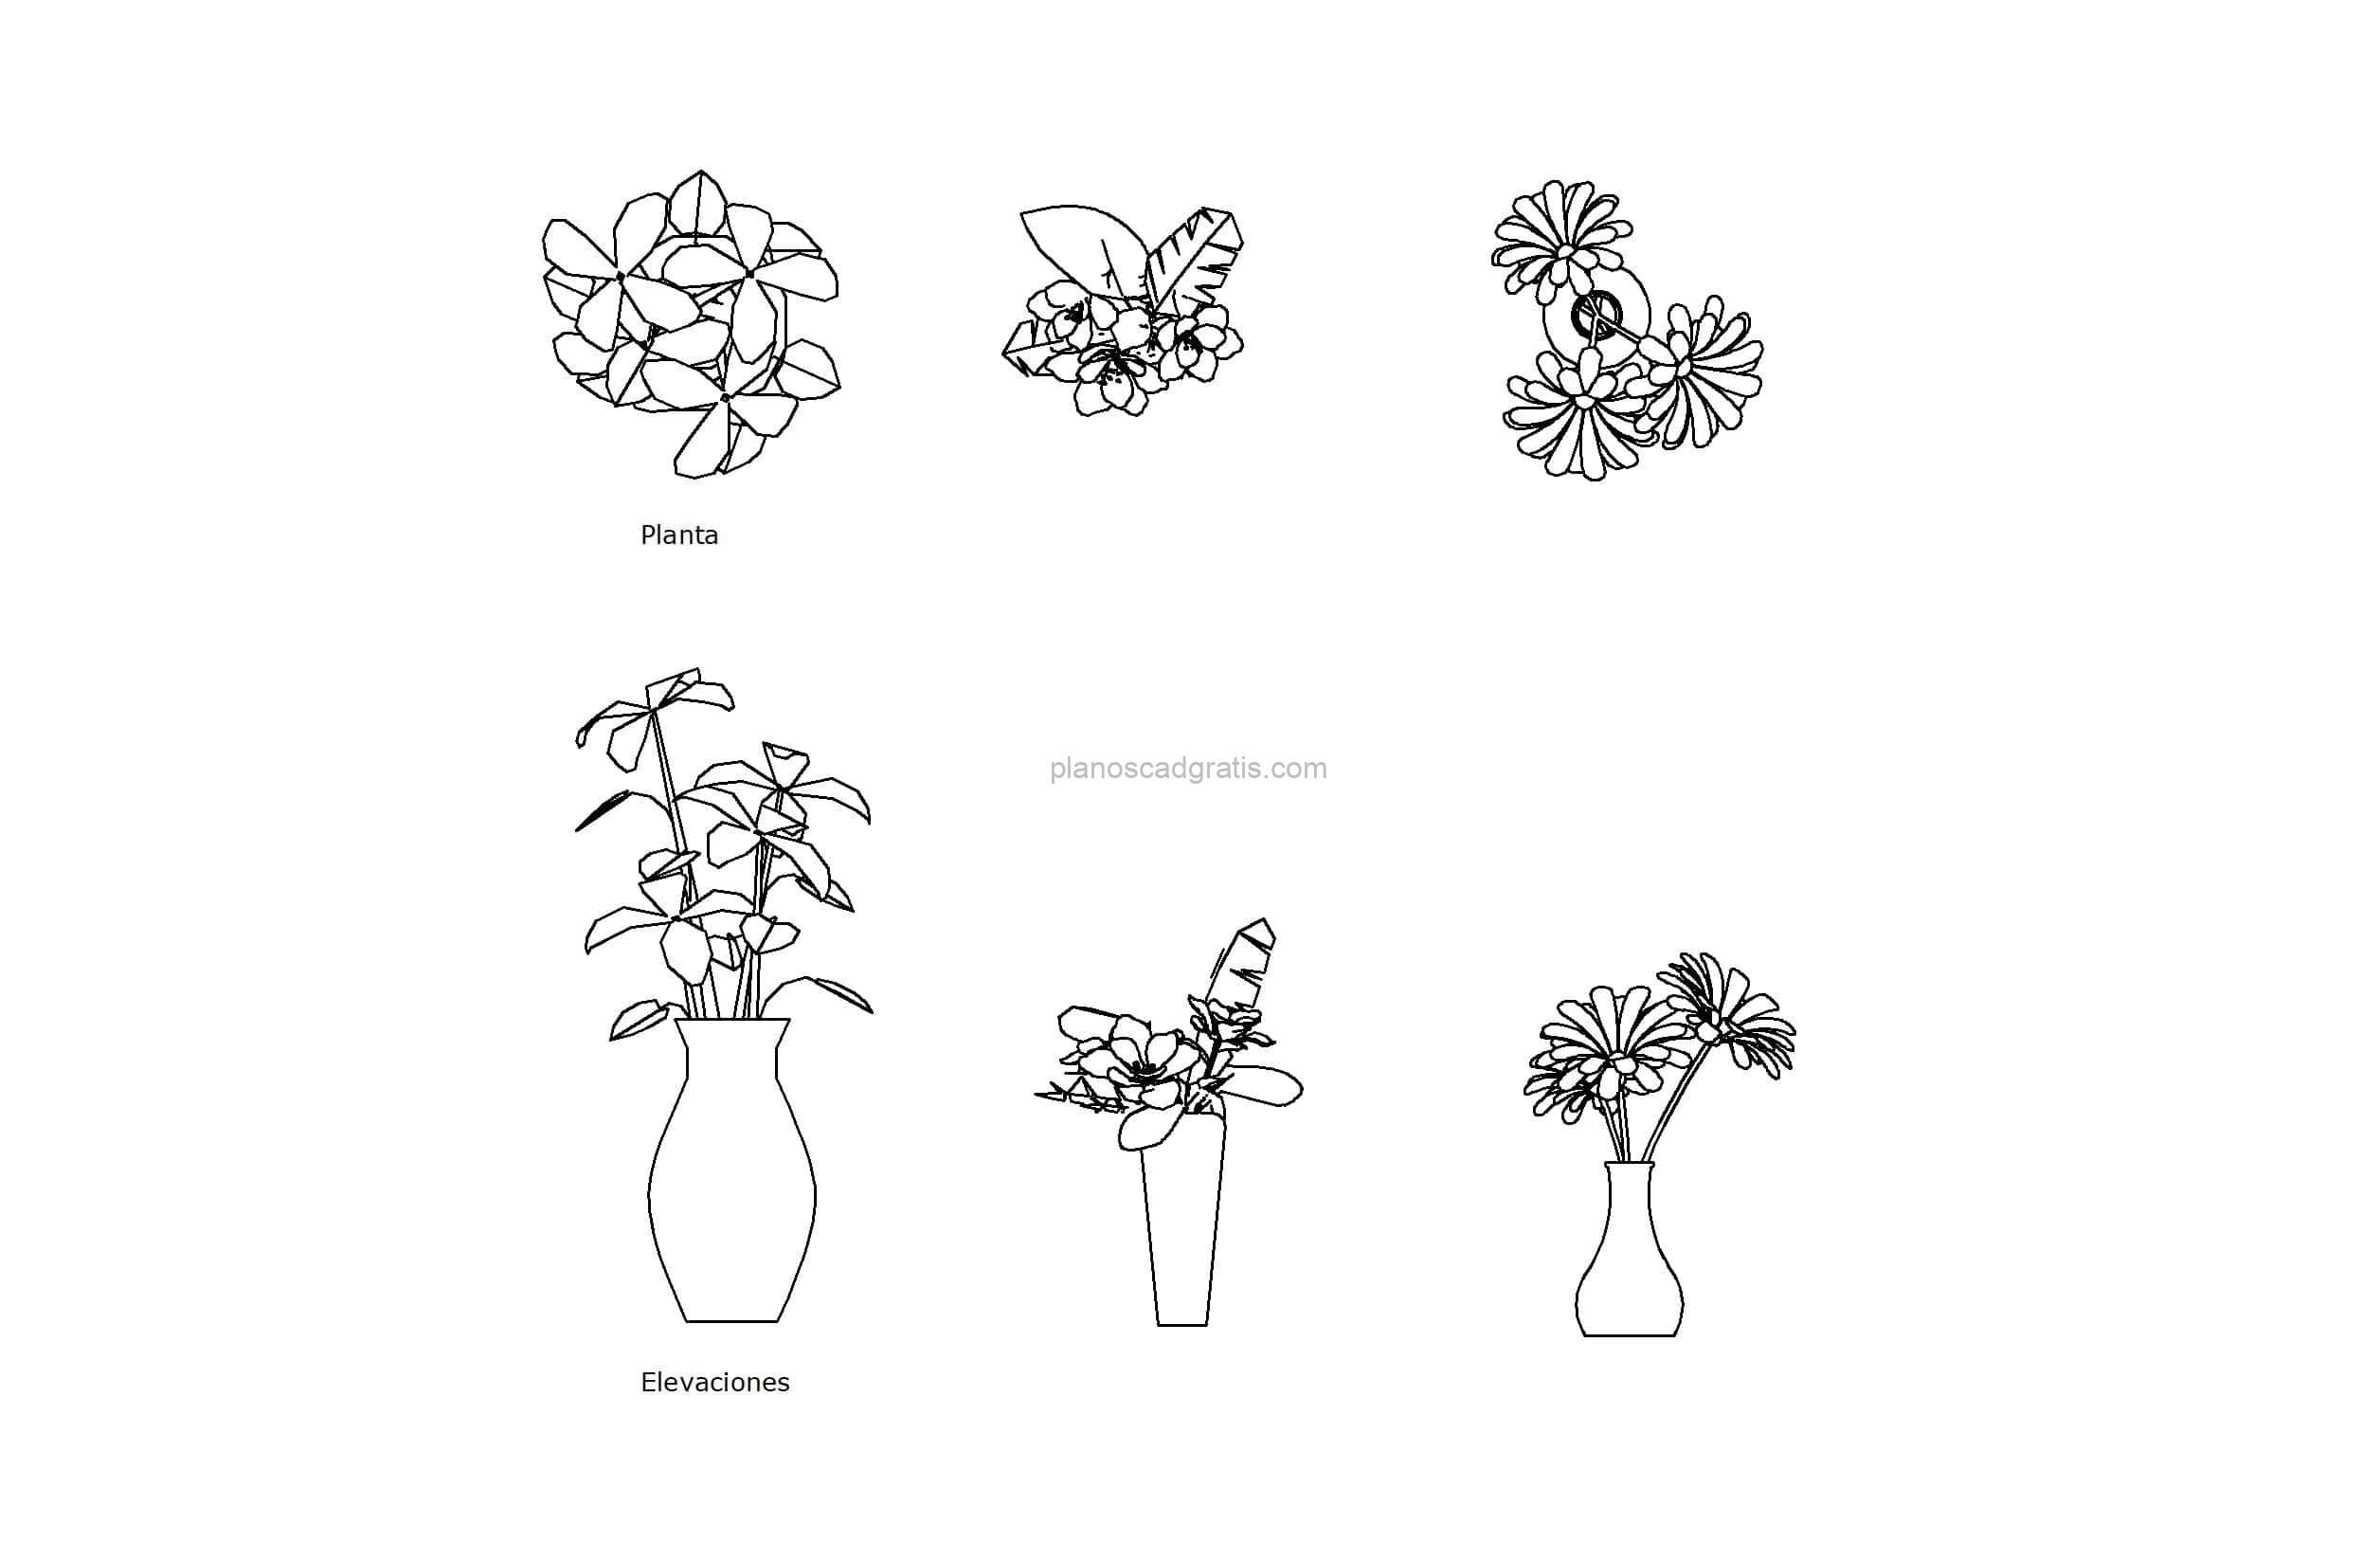 dibujo de autocad de diferentes macetas de flores, vistas en planta y elevación, dibujo 2d para descarga gratis